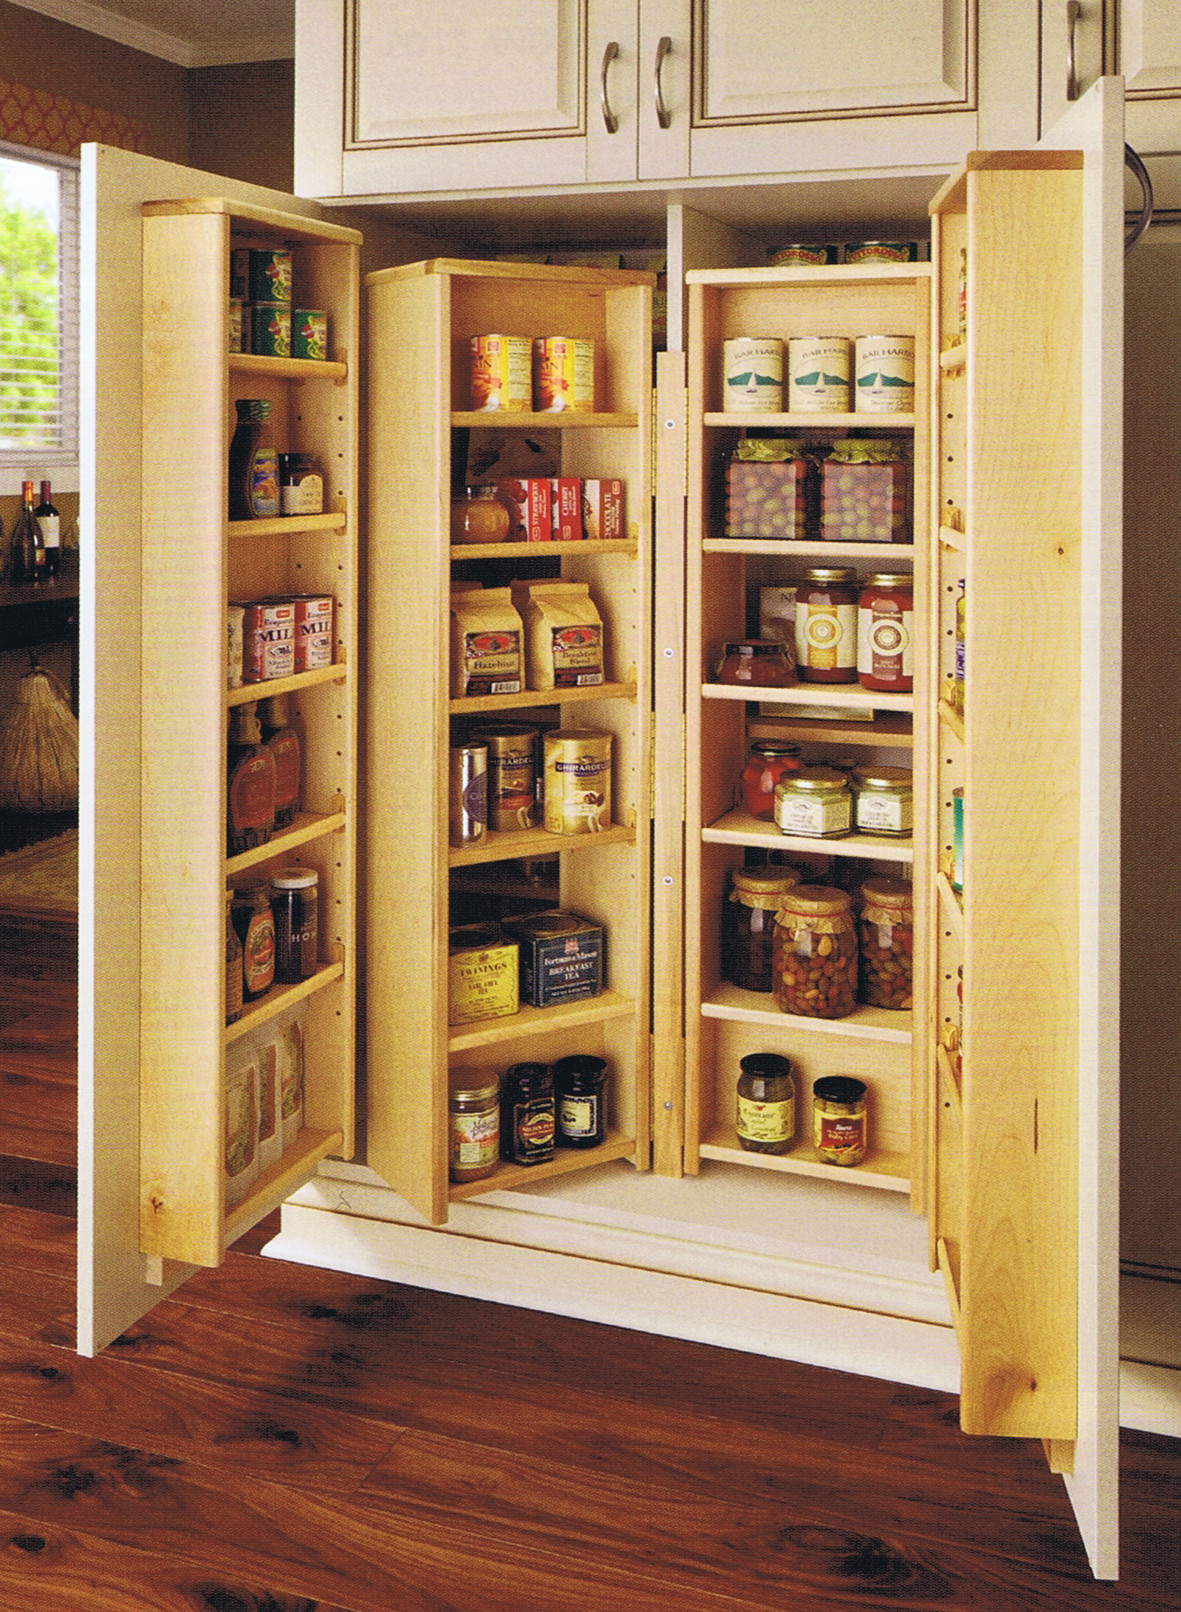 DIY Kitchen Pantry Cabinet Plans
 Wood Diy Kitchen Pantry Cabinet Plans PDF Plans